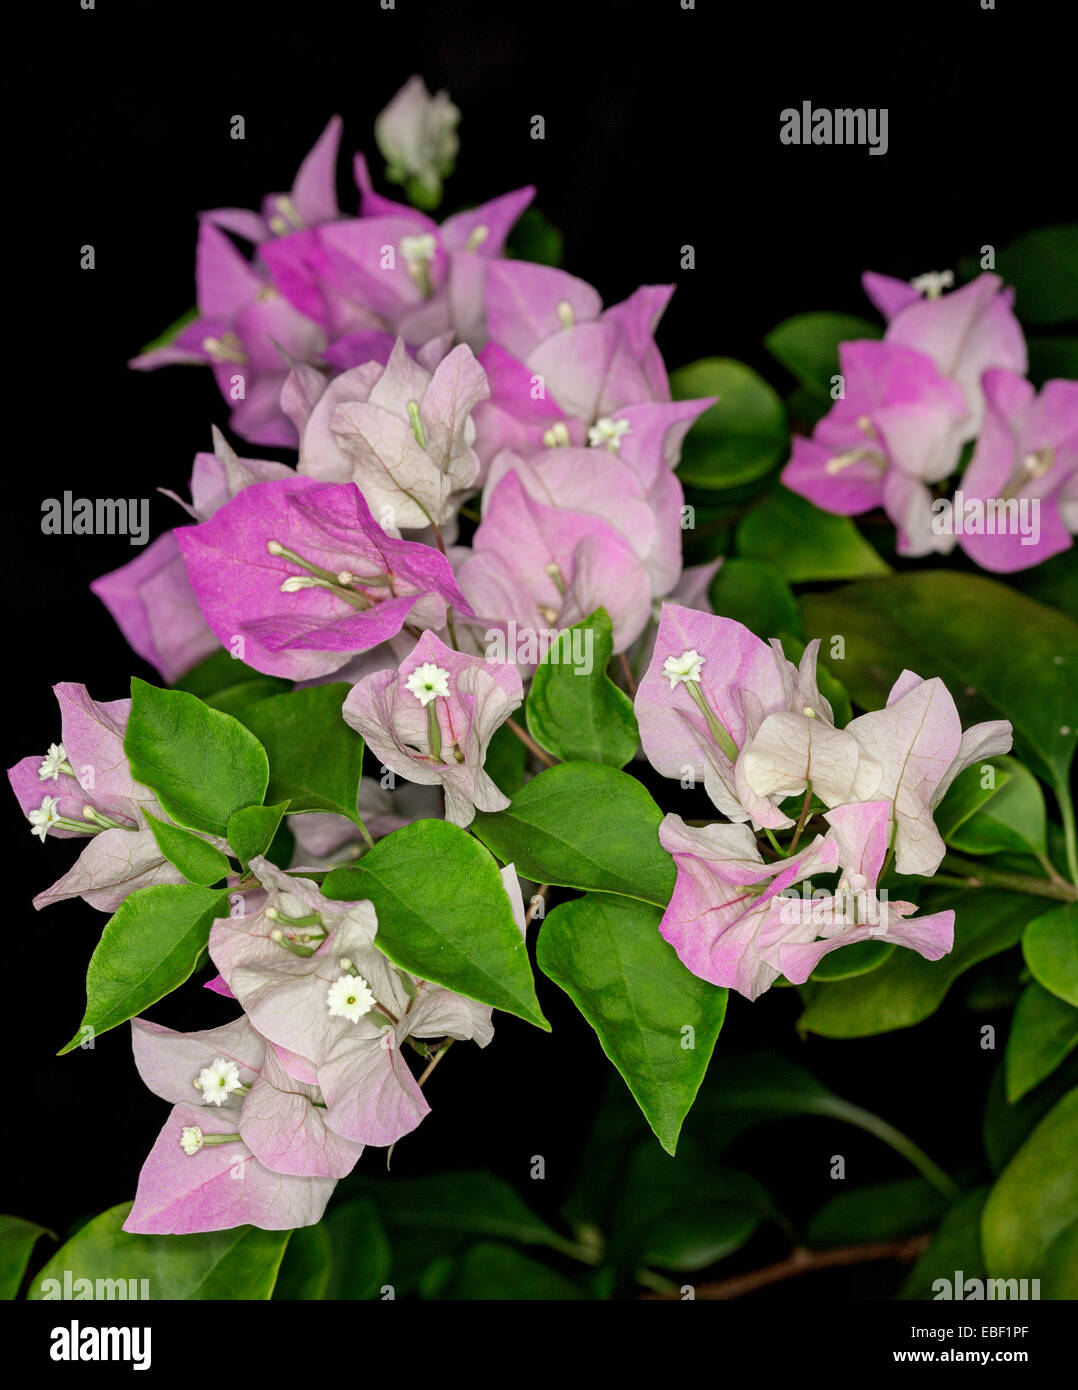 Nahaufnahme eines Clusters von winzigen Blüten, rosa & weiße Hochblätter, smaragdgrüne Blätter Bambino Bougainvillea Majik, schwarzer Hintergrund Stockfoto